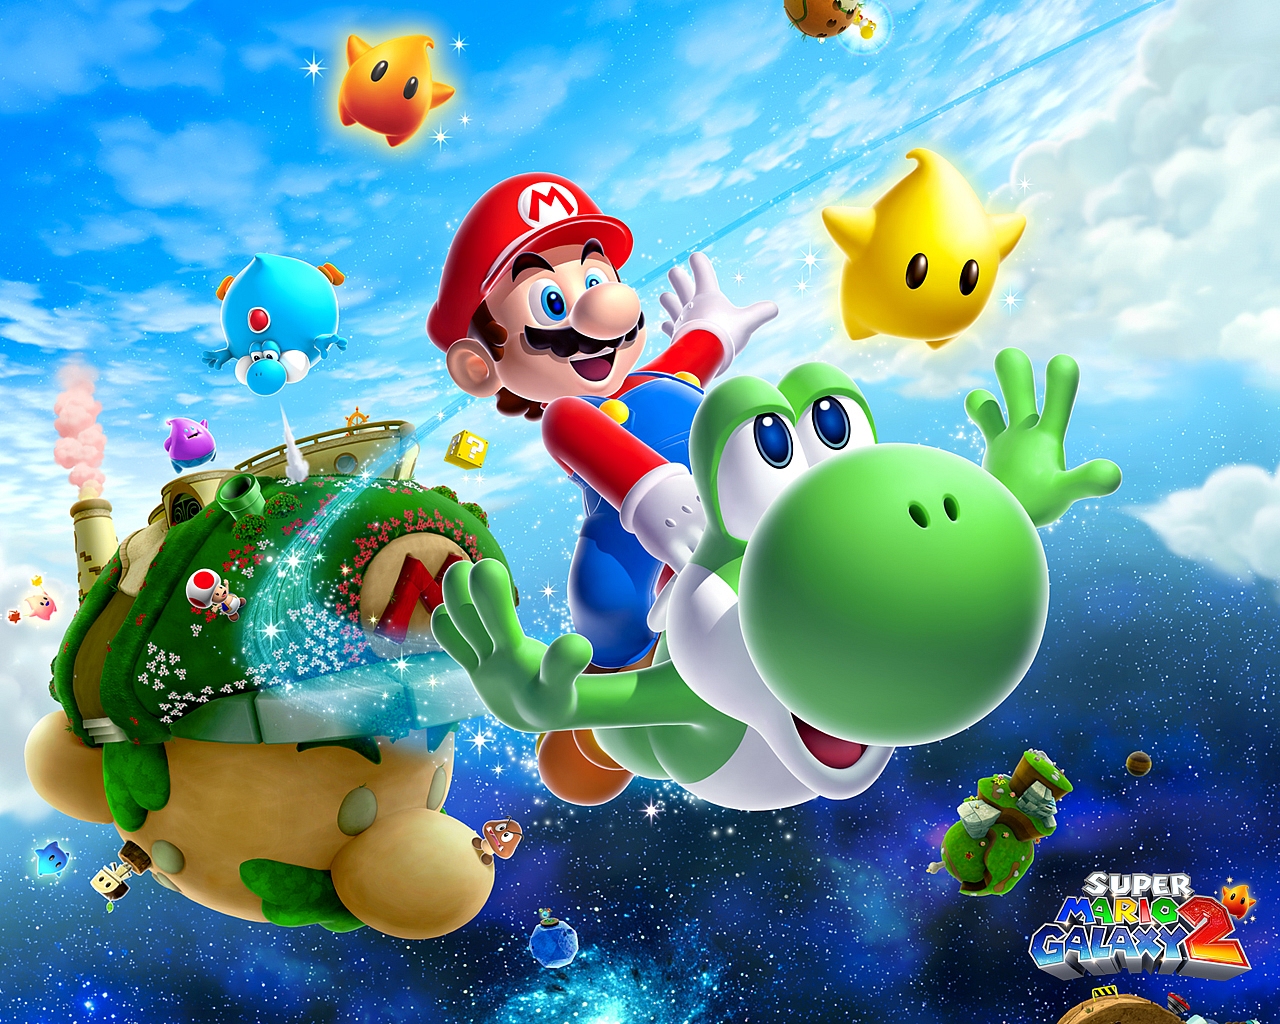 "Super Mario Galaxy 2" desktop wallpaper (1280 x 1024 pixels)